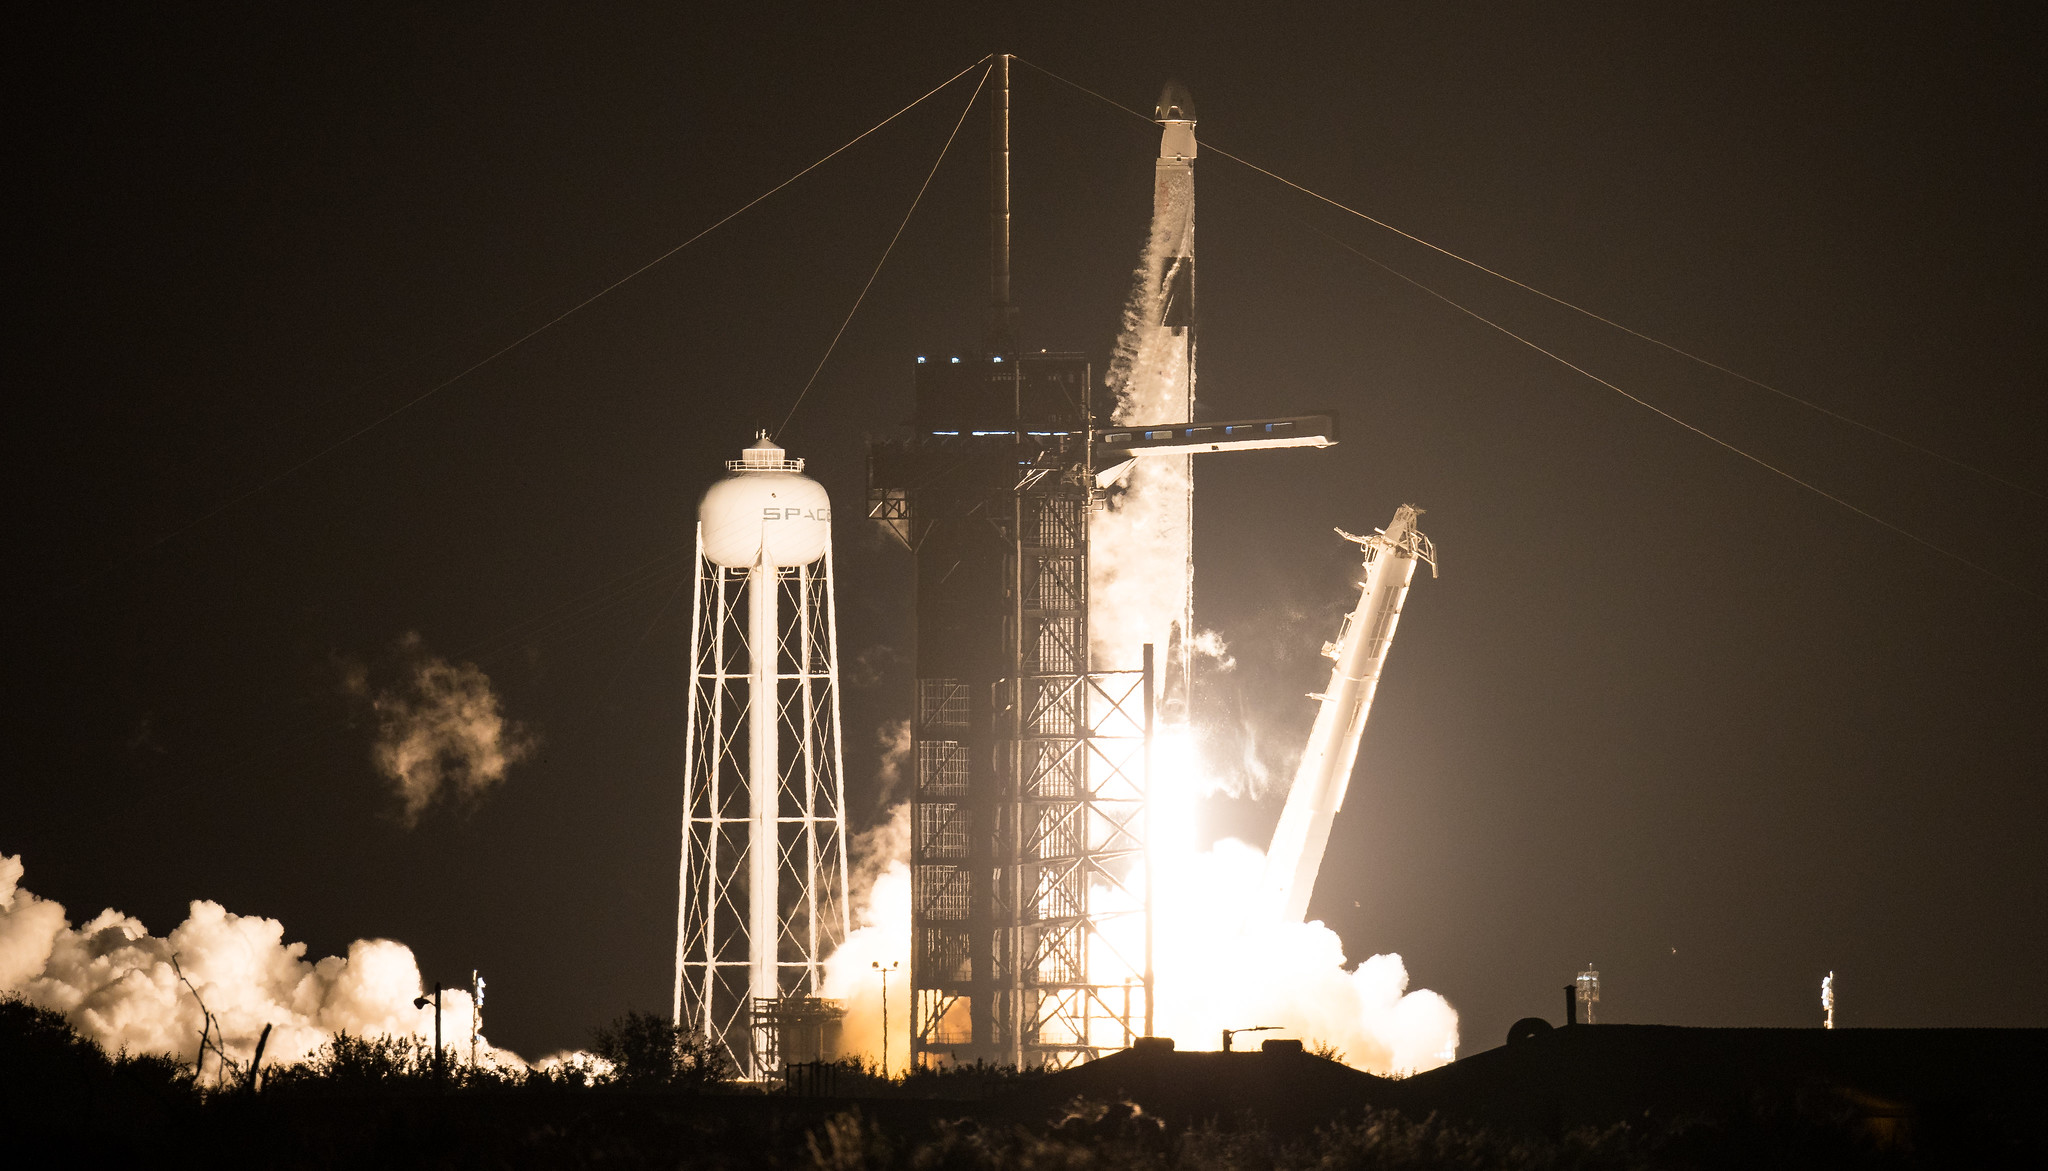 Crew-1 Launches Nov. 15, 2020